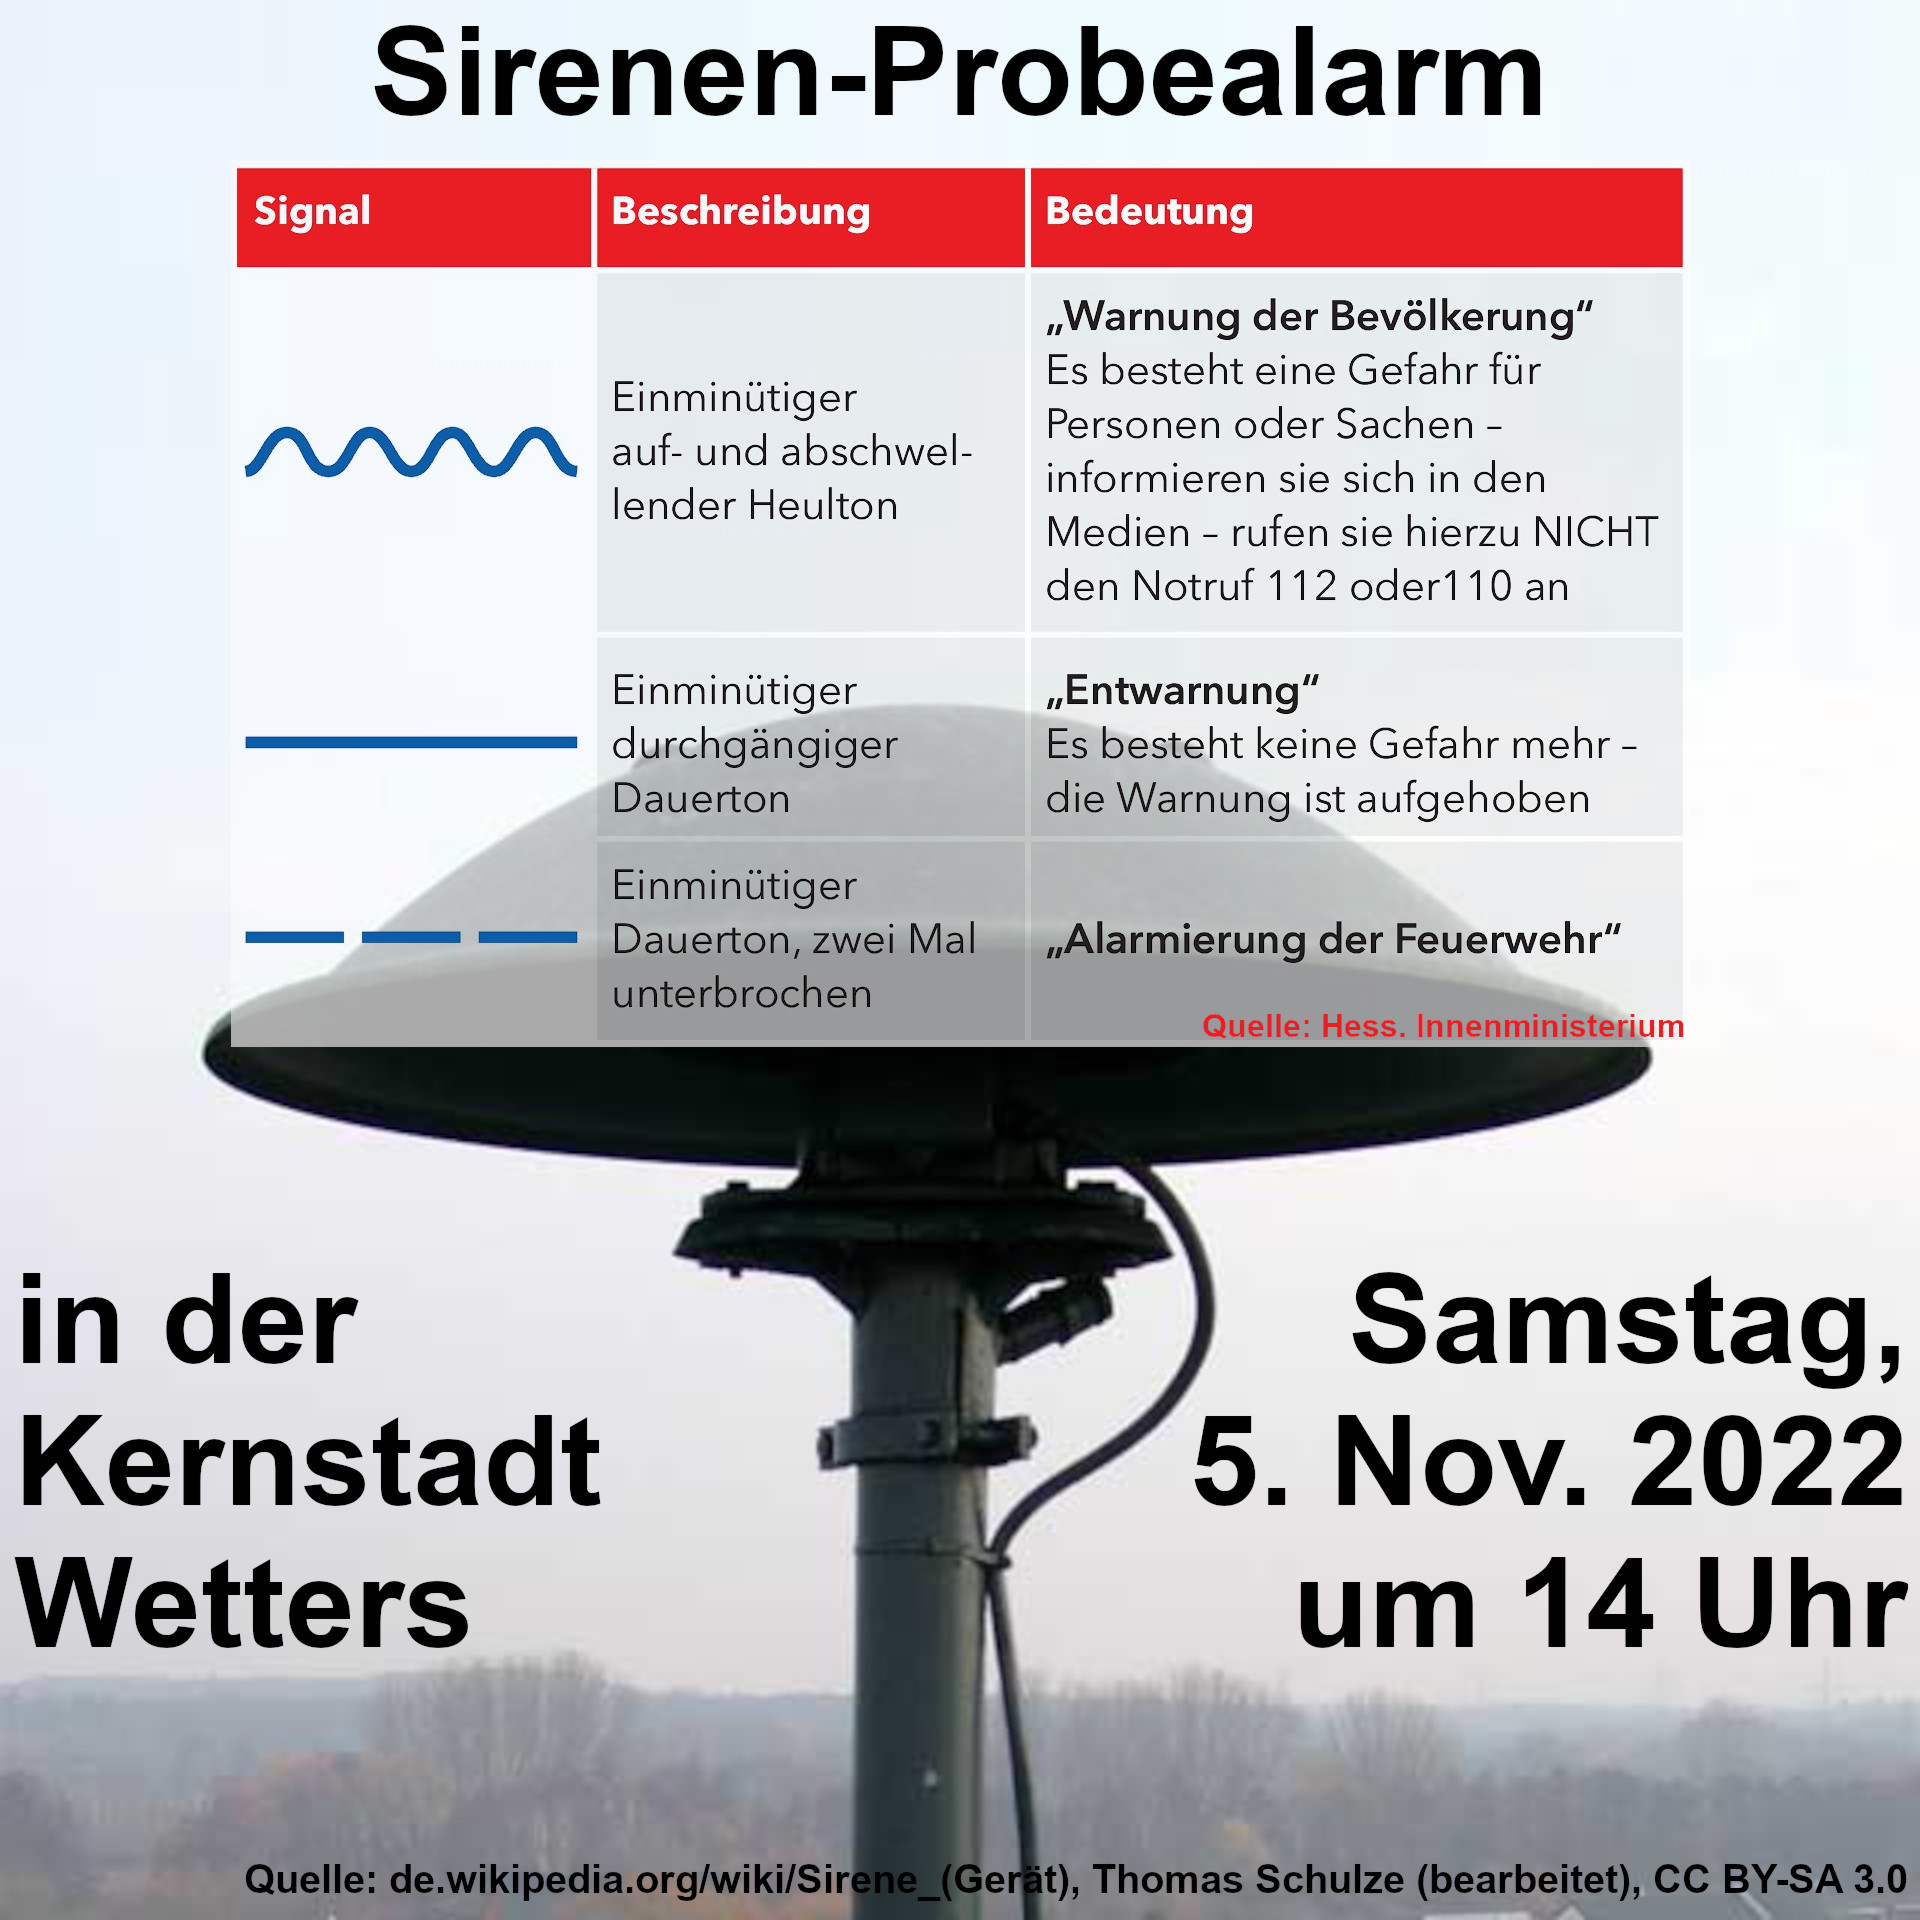 Probealarm-Sirenensignal in der Kernstadt Wetters am 5.11.22